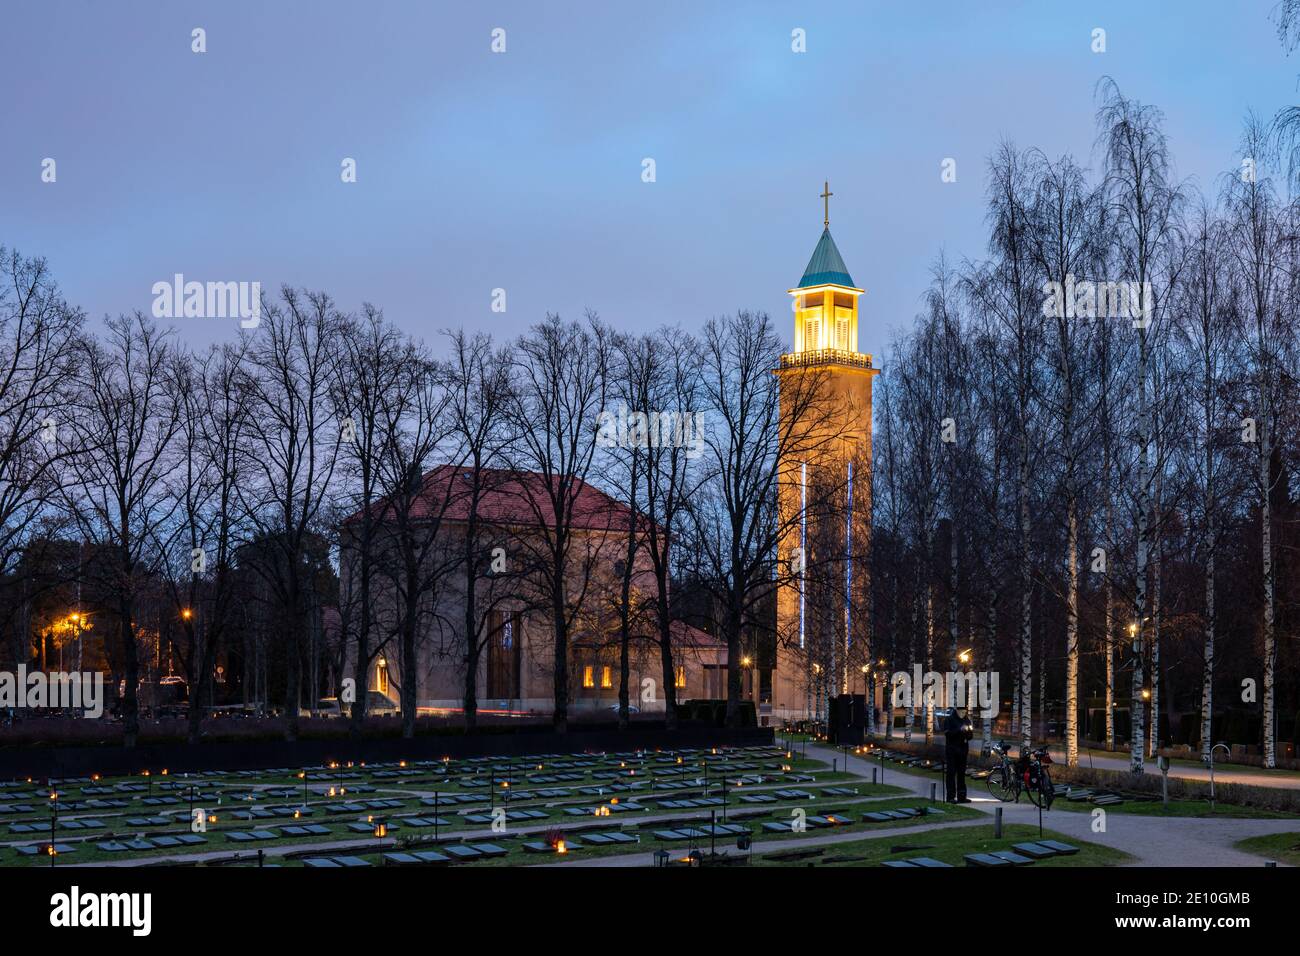 Illuminated steeple of Hietaniemi cemetery chapel after dark in Helsinki, Finland Stock Photo